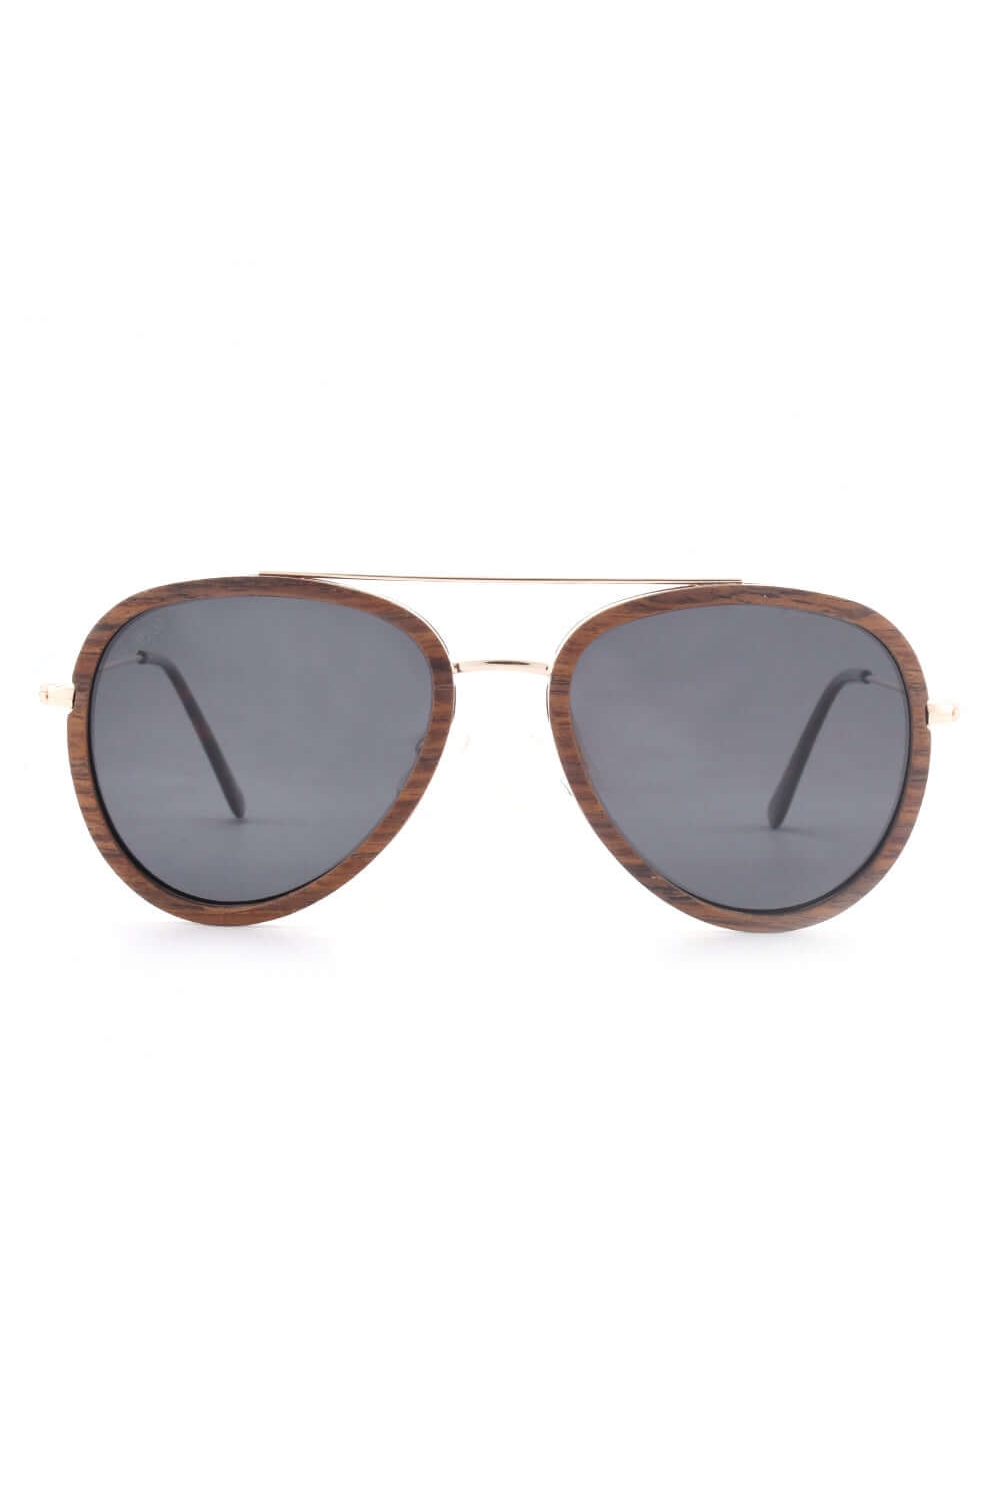 Joplins Sunglasses Damen vegan Julian - Sonnenbrille Aus Holz